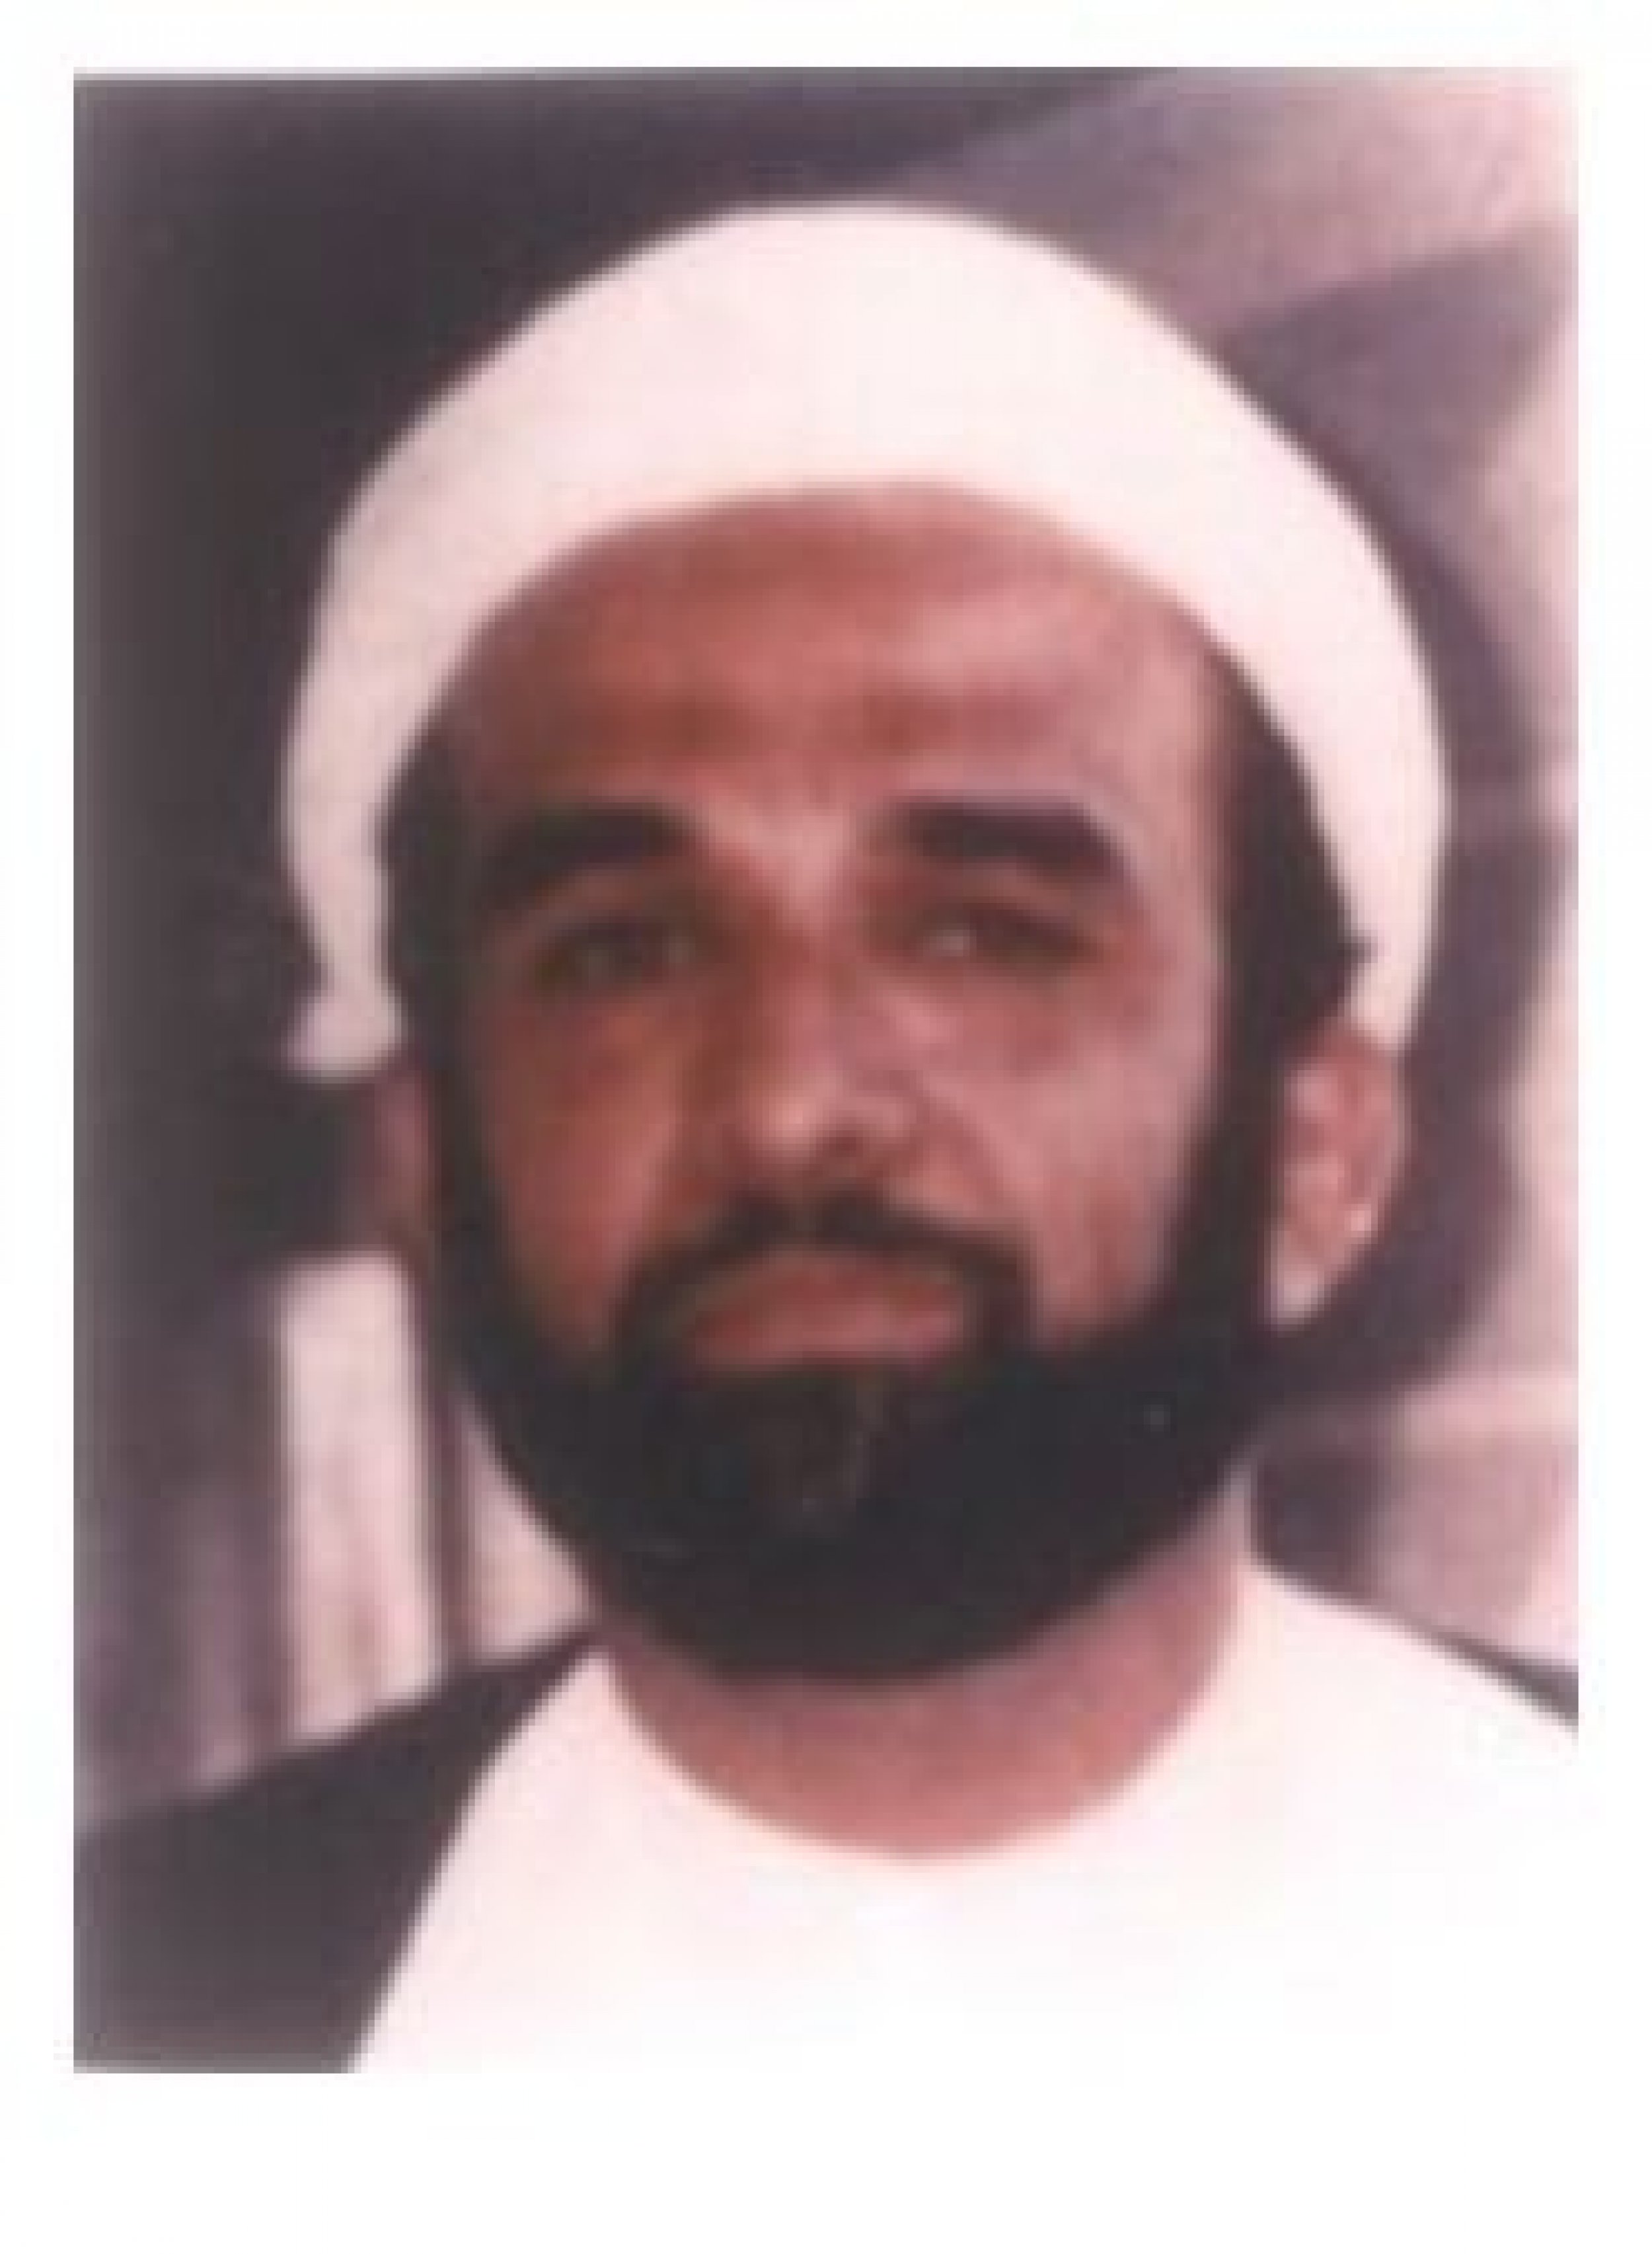 Abdelkarim Hussein Mohamed Al-Nasser 